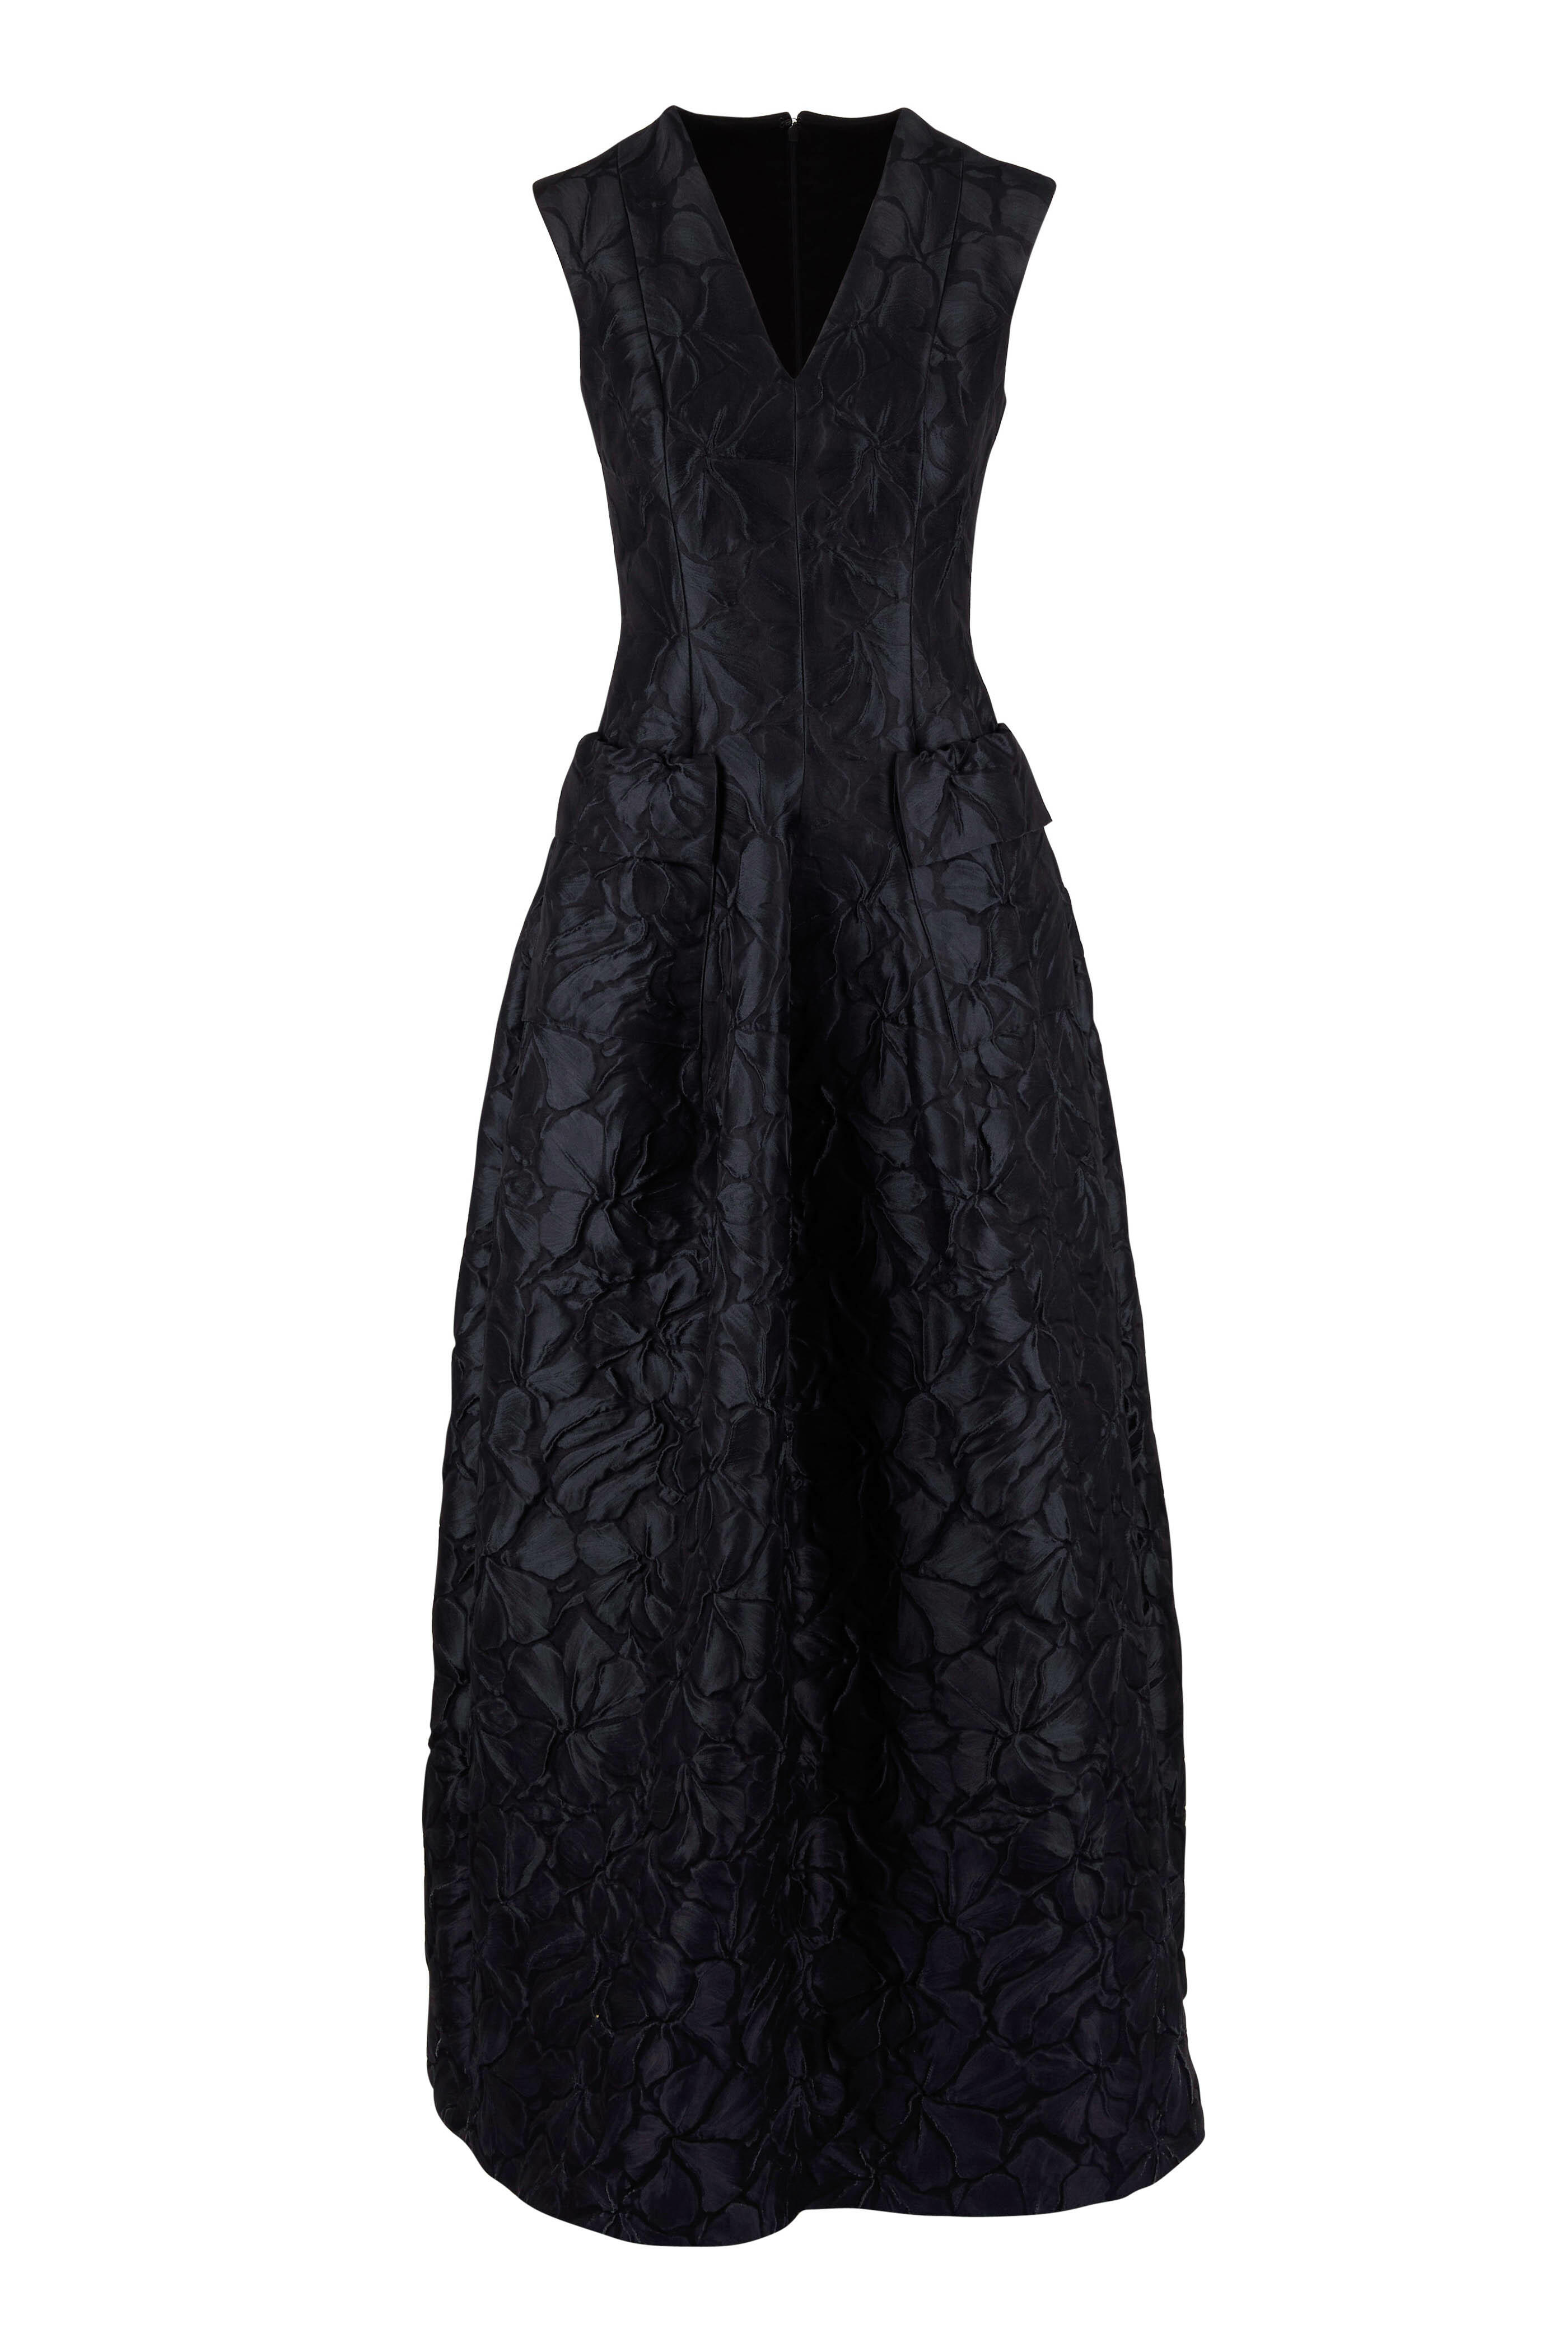 Talbot Runhof - Momo Black Sleeveless Textured Gown